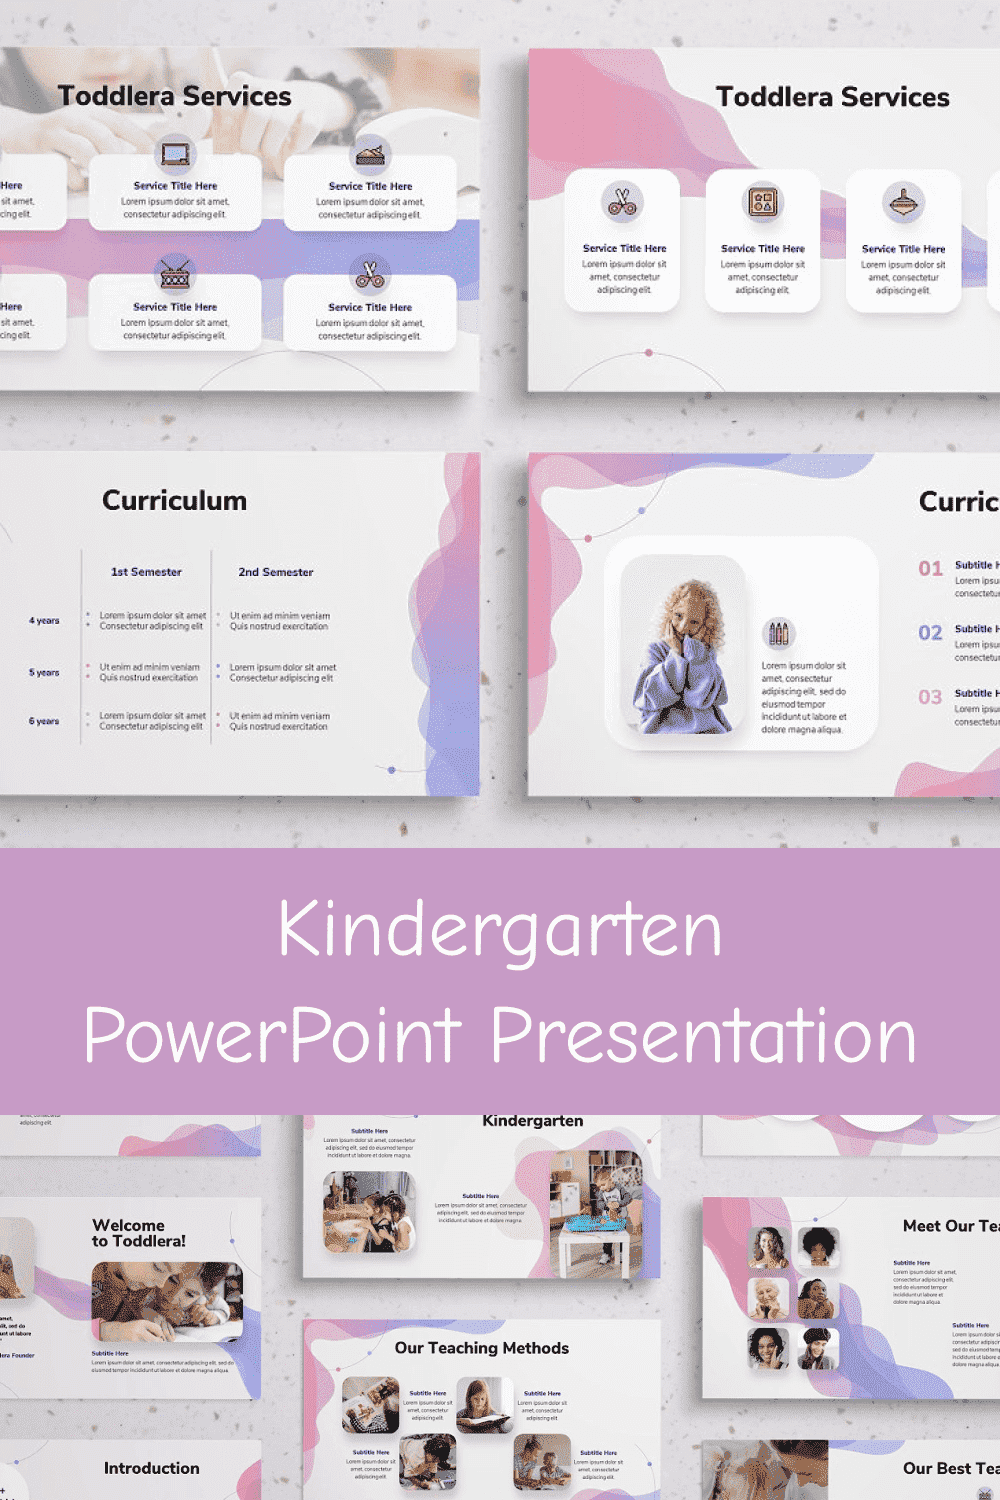 Kindergarten PowerPoint Presentation - "Toddlera Services".